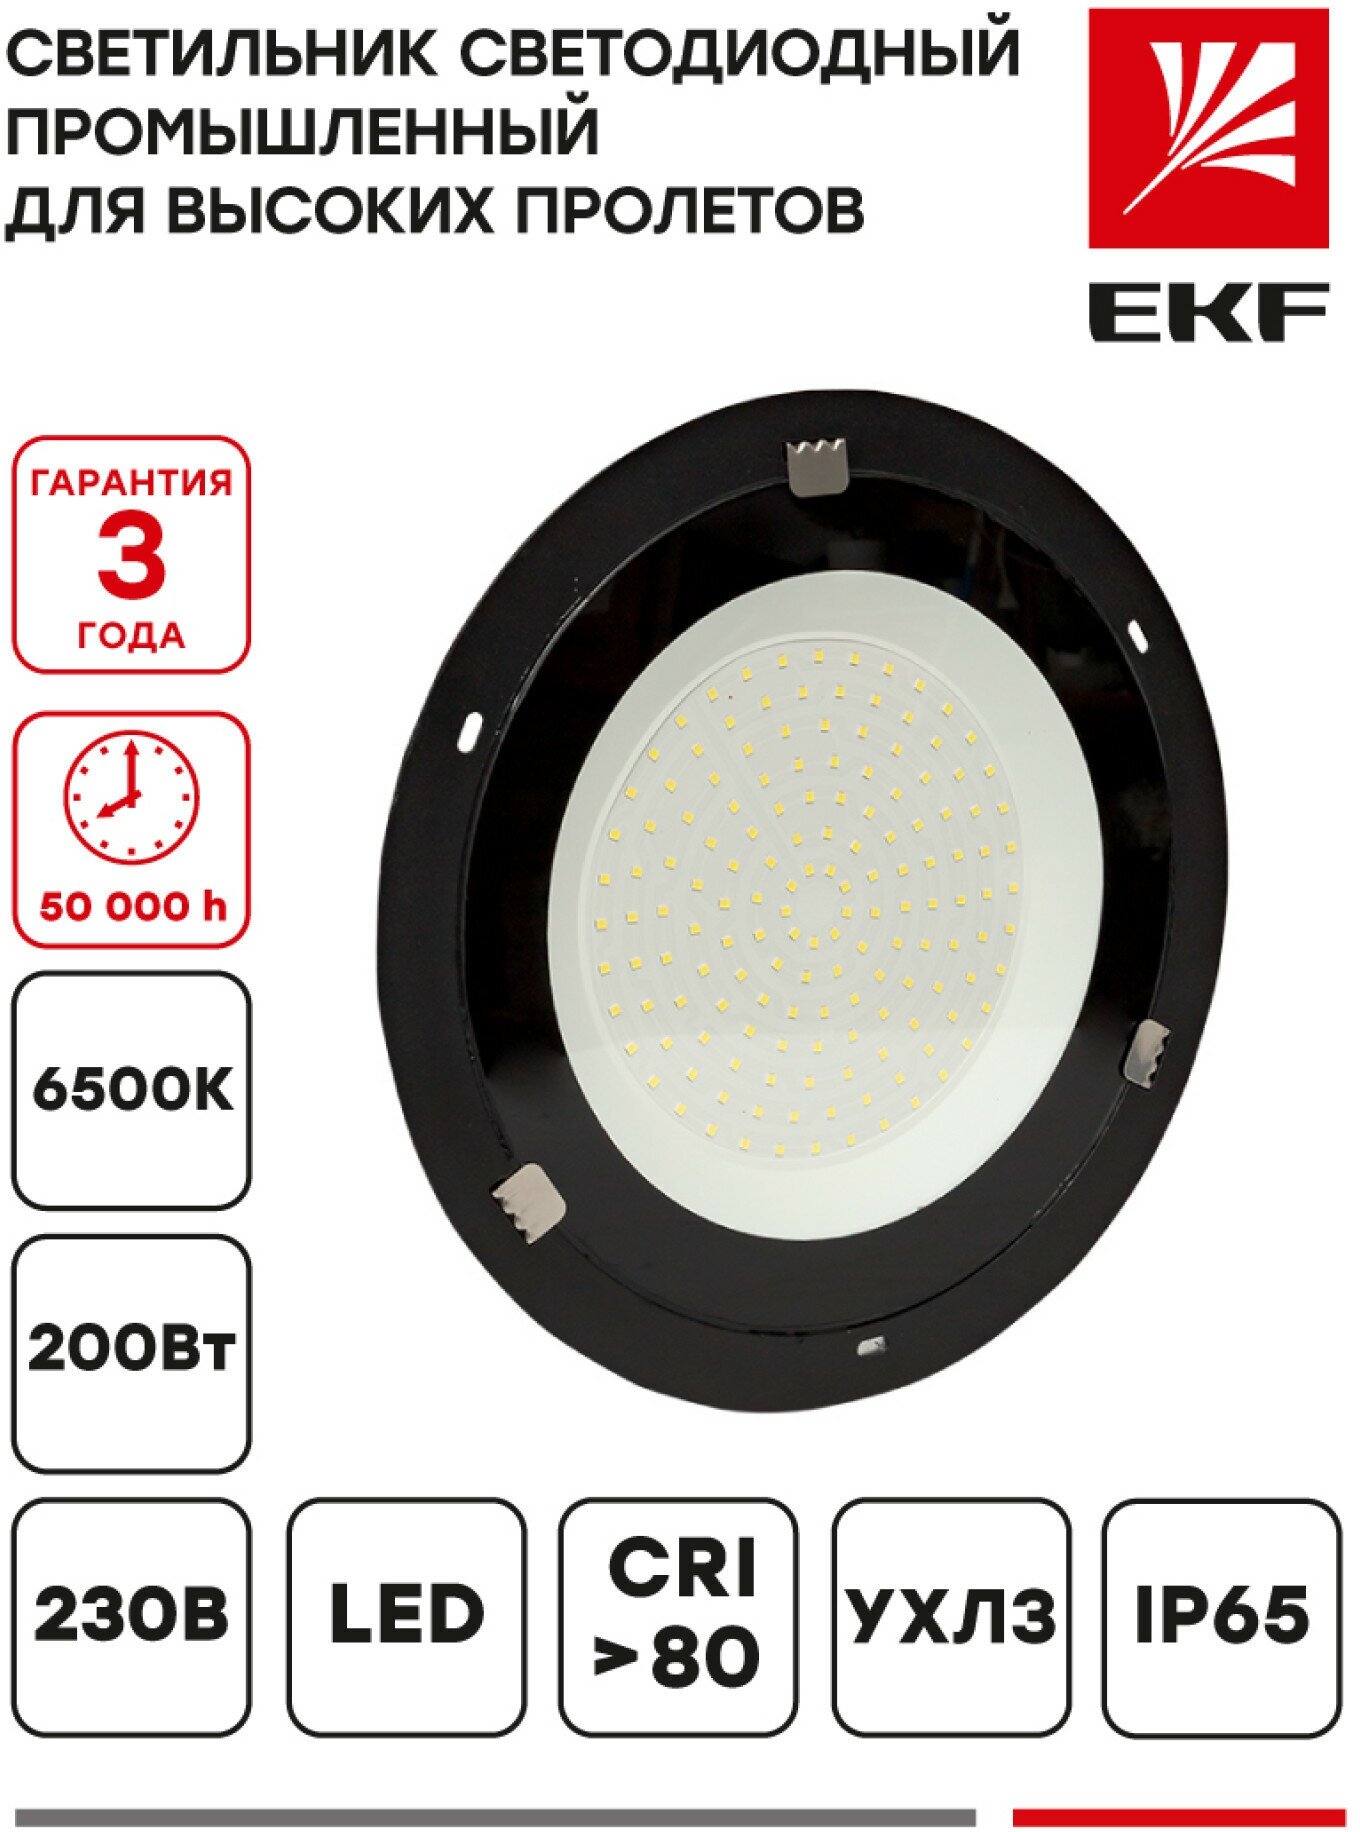 Светильник светодиодный промышленный для высоких пролетов ДСП-1103 200Вт 6500К IP65 EKF